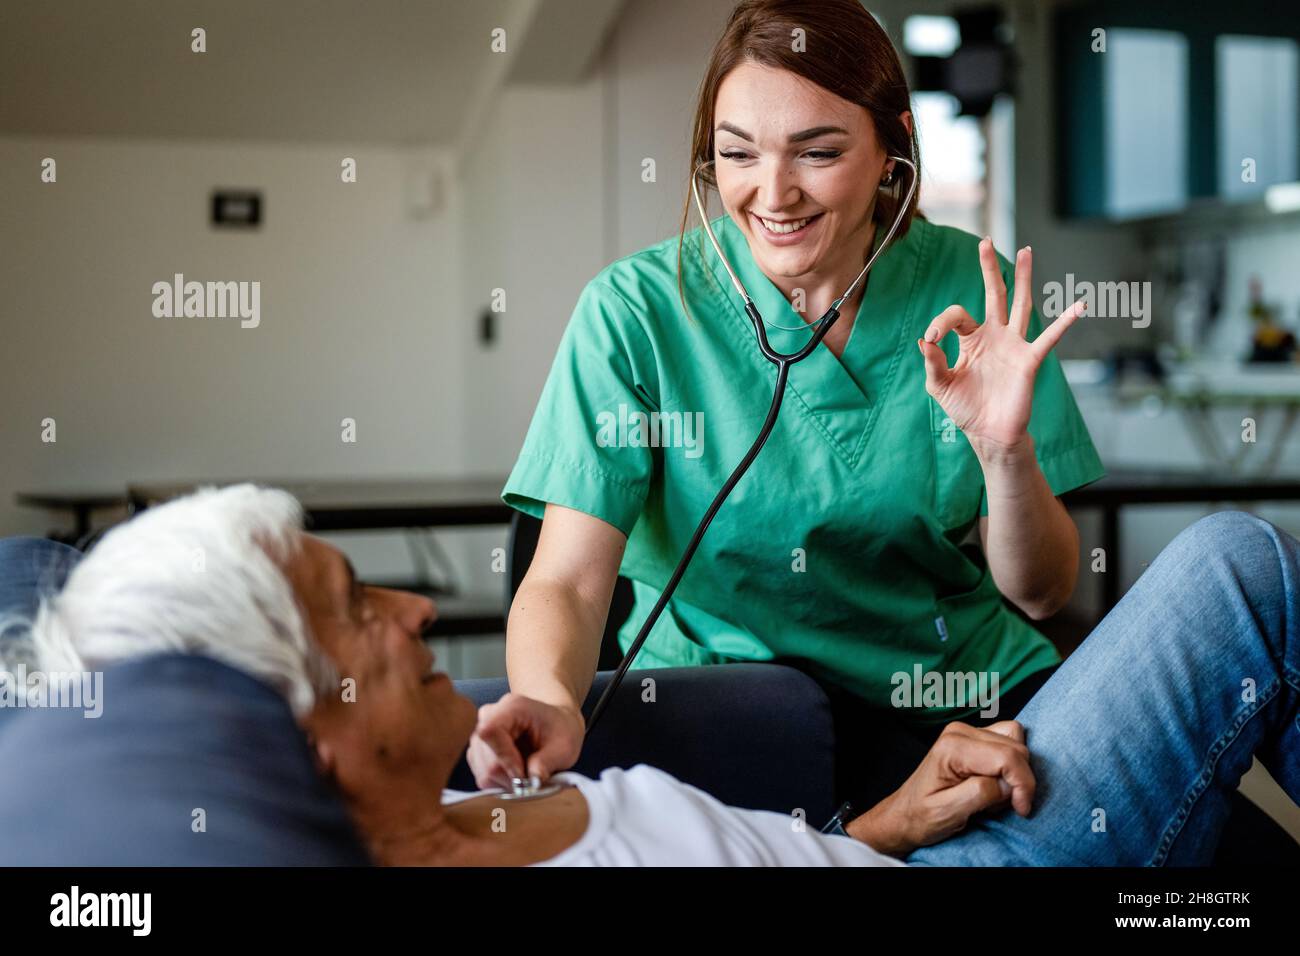 Gesundheitsbesucher, der Stethoskop verwendet, um die Gesundheit eines älteren Mannes zu überprüfen, junge Krankenschwester, die während eines Hausbesuchs mit der Hand in Ordnung gestikuliert, Konzept der häuslichen Pflege Stockfoto